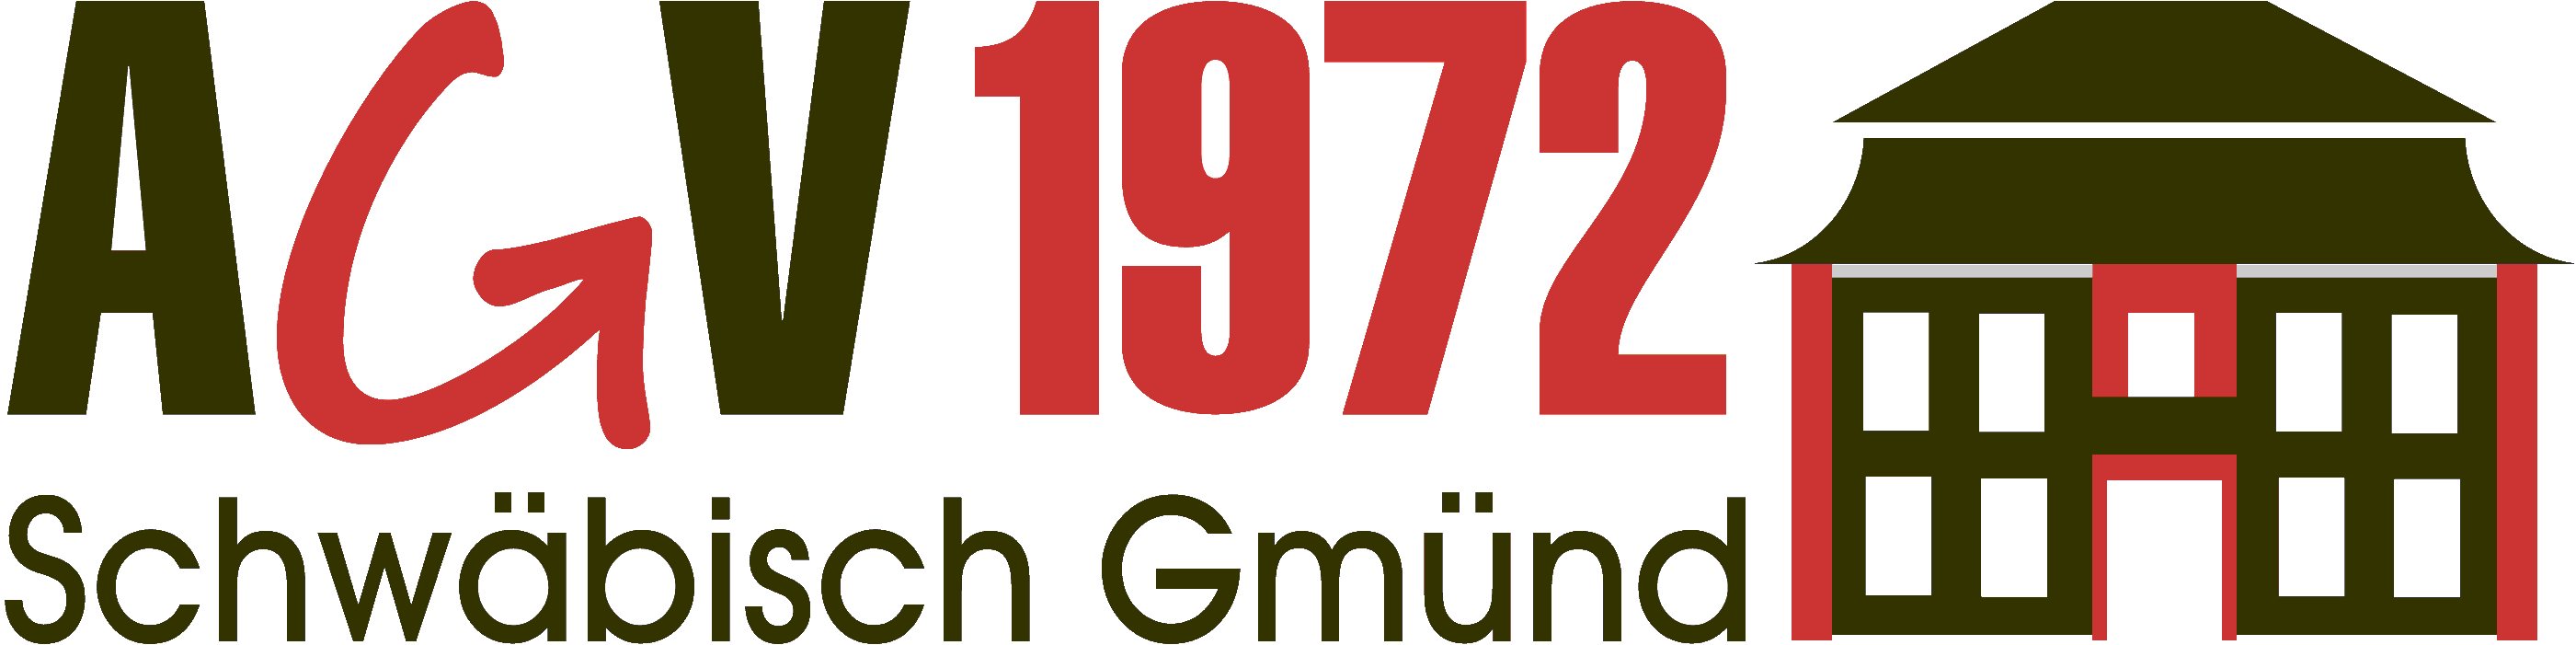 AGV 1972 Schwäbisch Gmünd